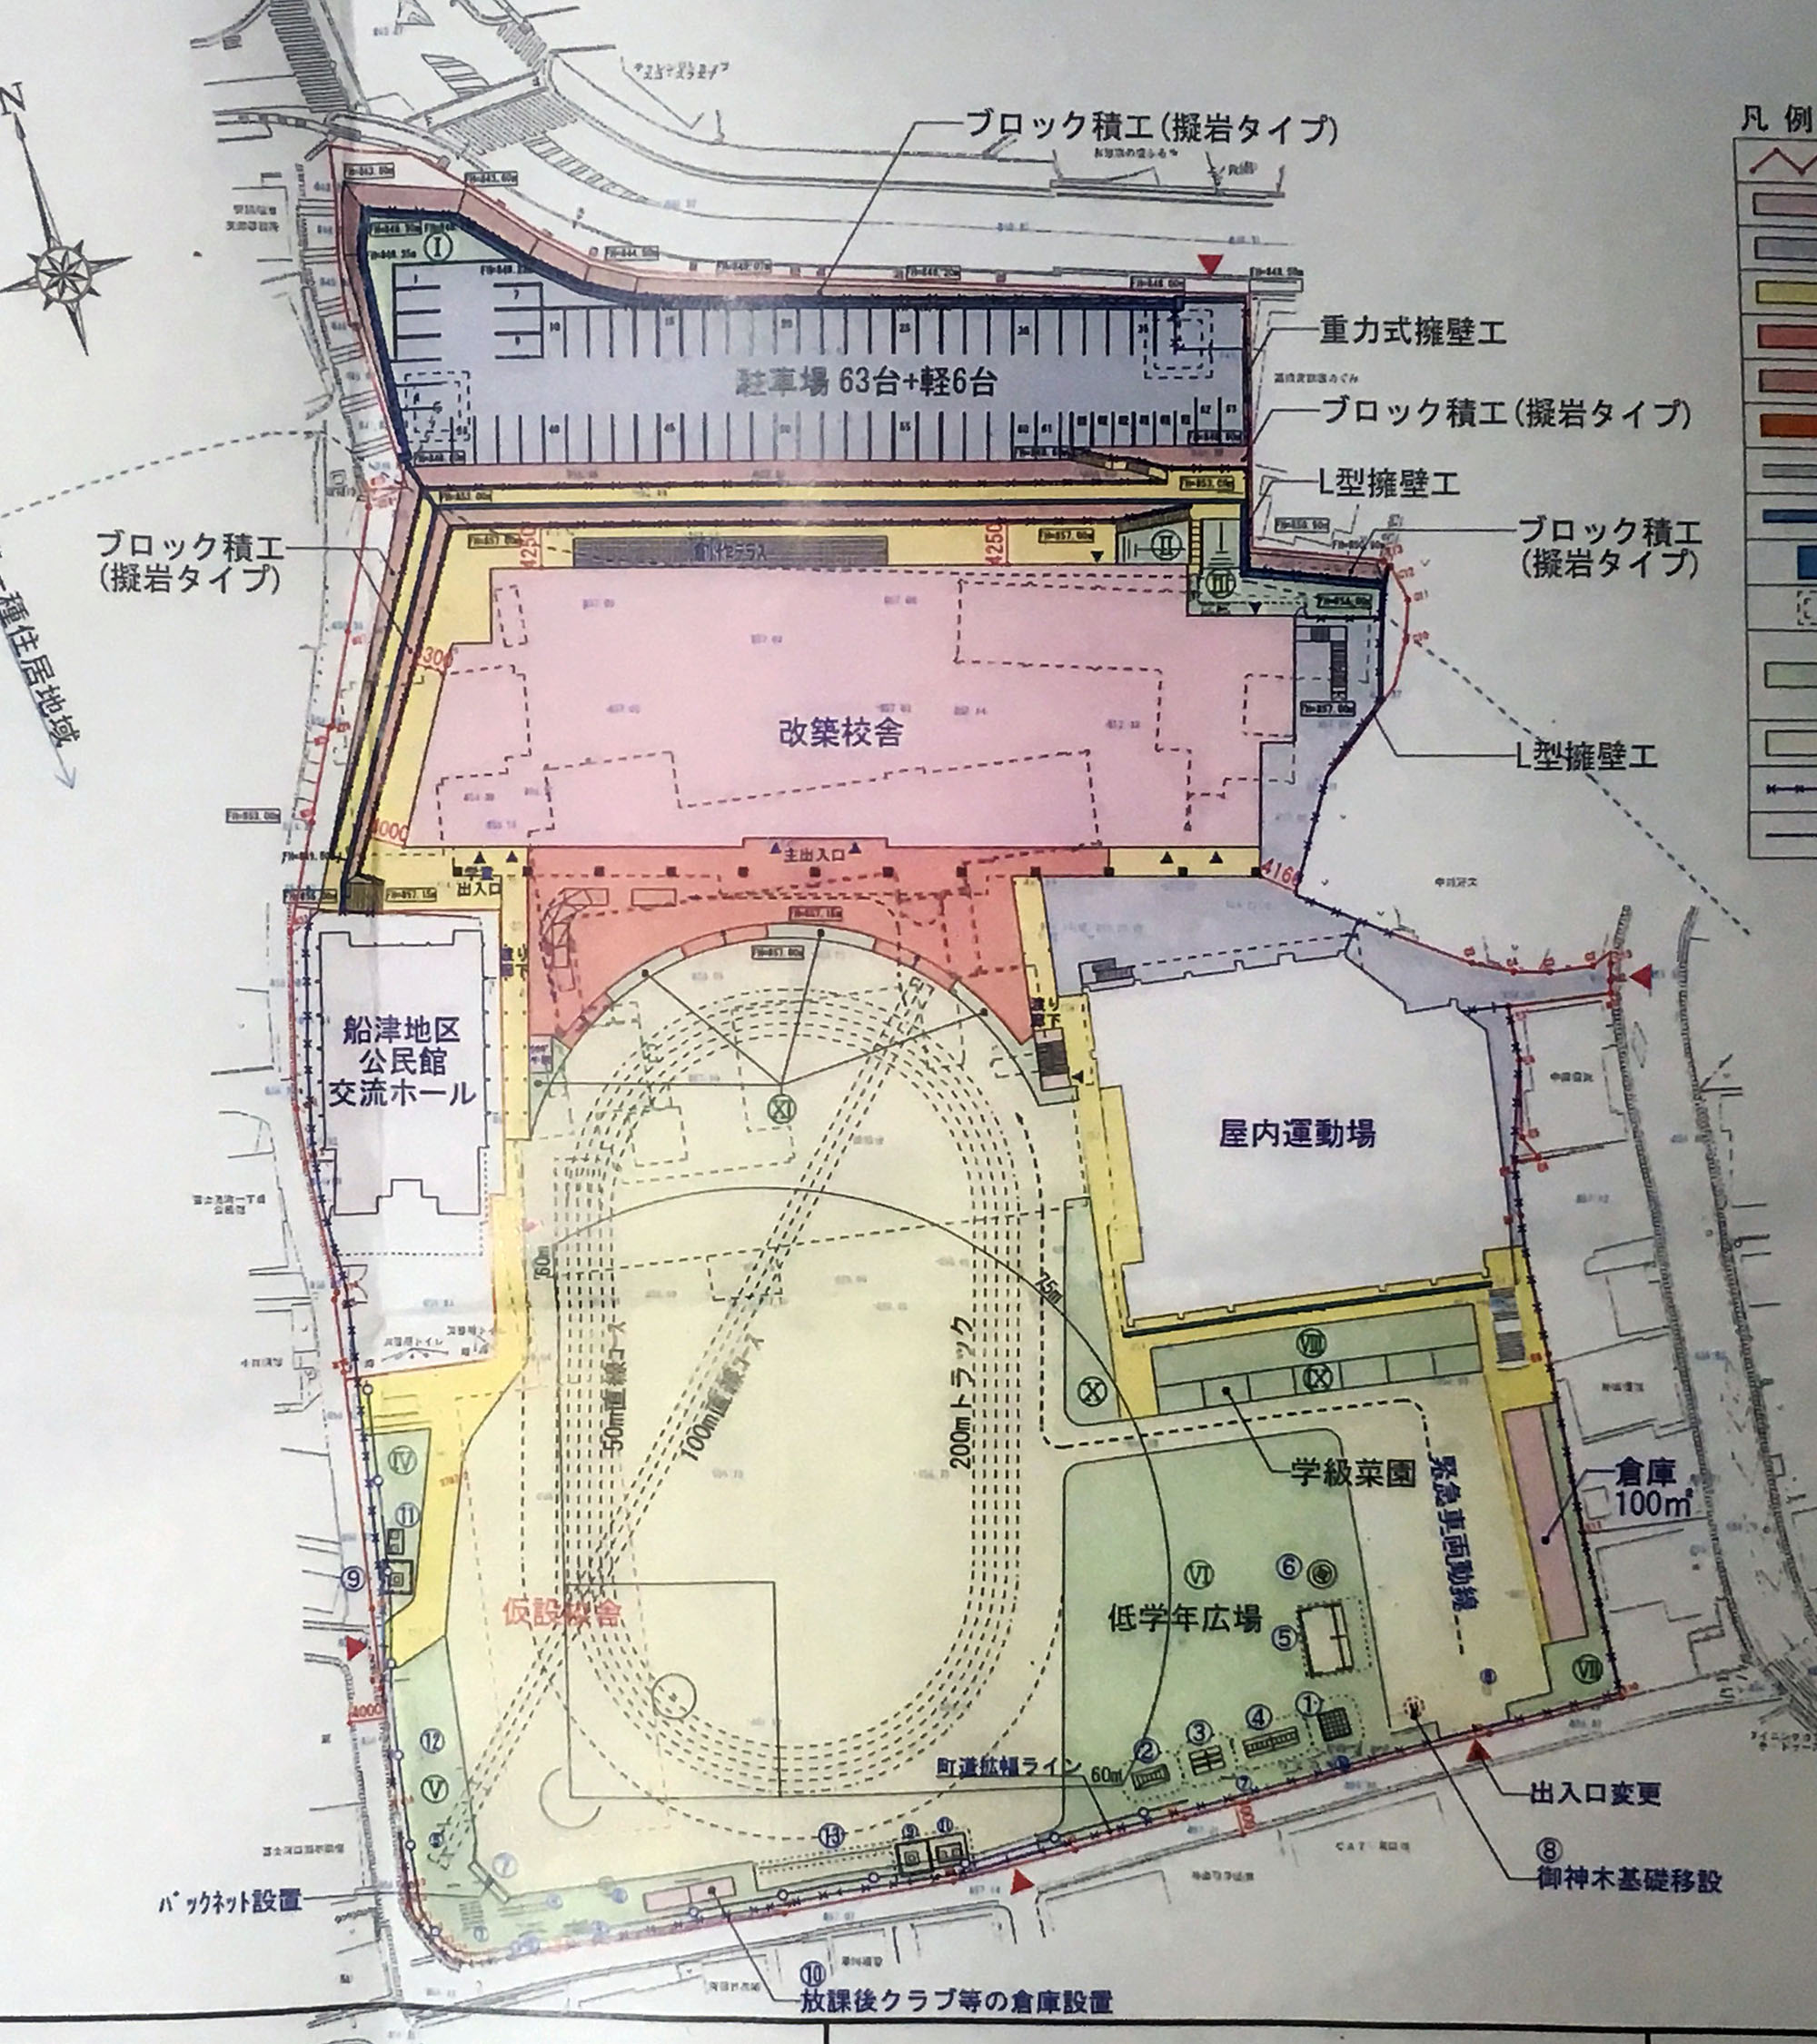 船津小学校新校舎建設建て替え後の配置図